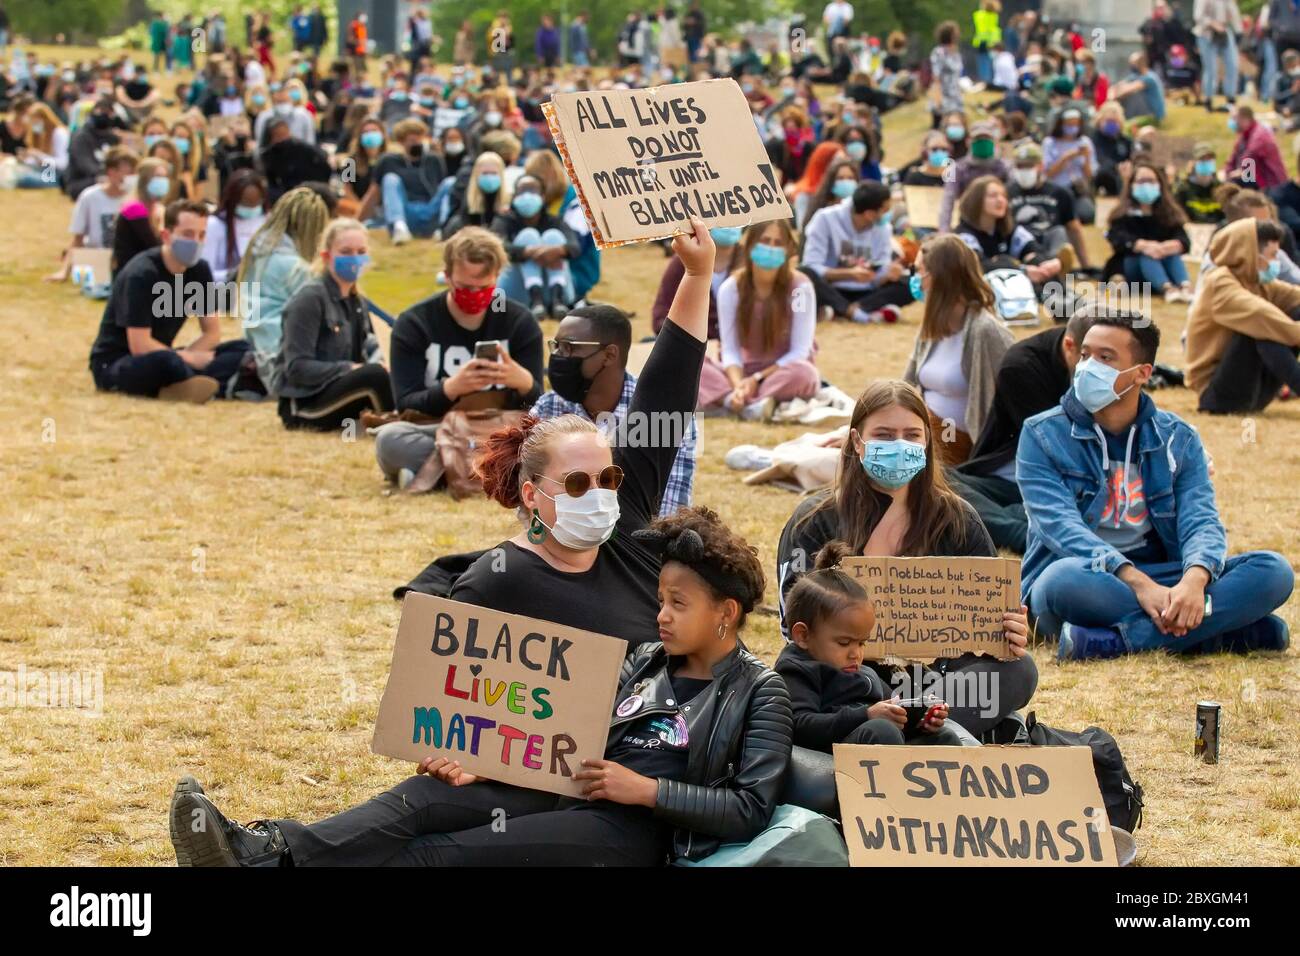 7 juin 2020 Maastricht, pays-Bas des gens se rassemblent pour protester contre le racisme #blm #blacklivesmonters le 7 juin 2020 à Maastricht, pays-Bas Banque D'Images